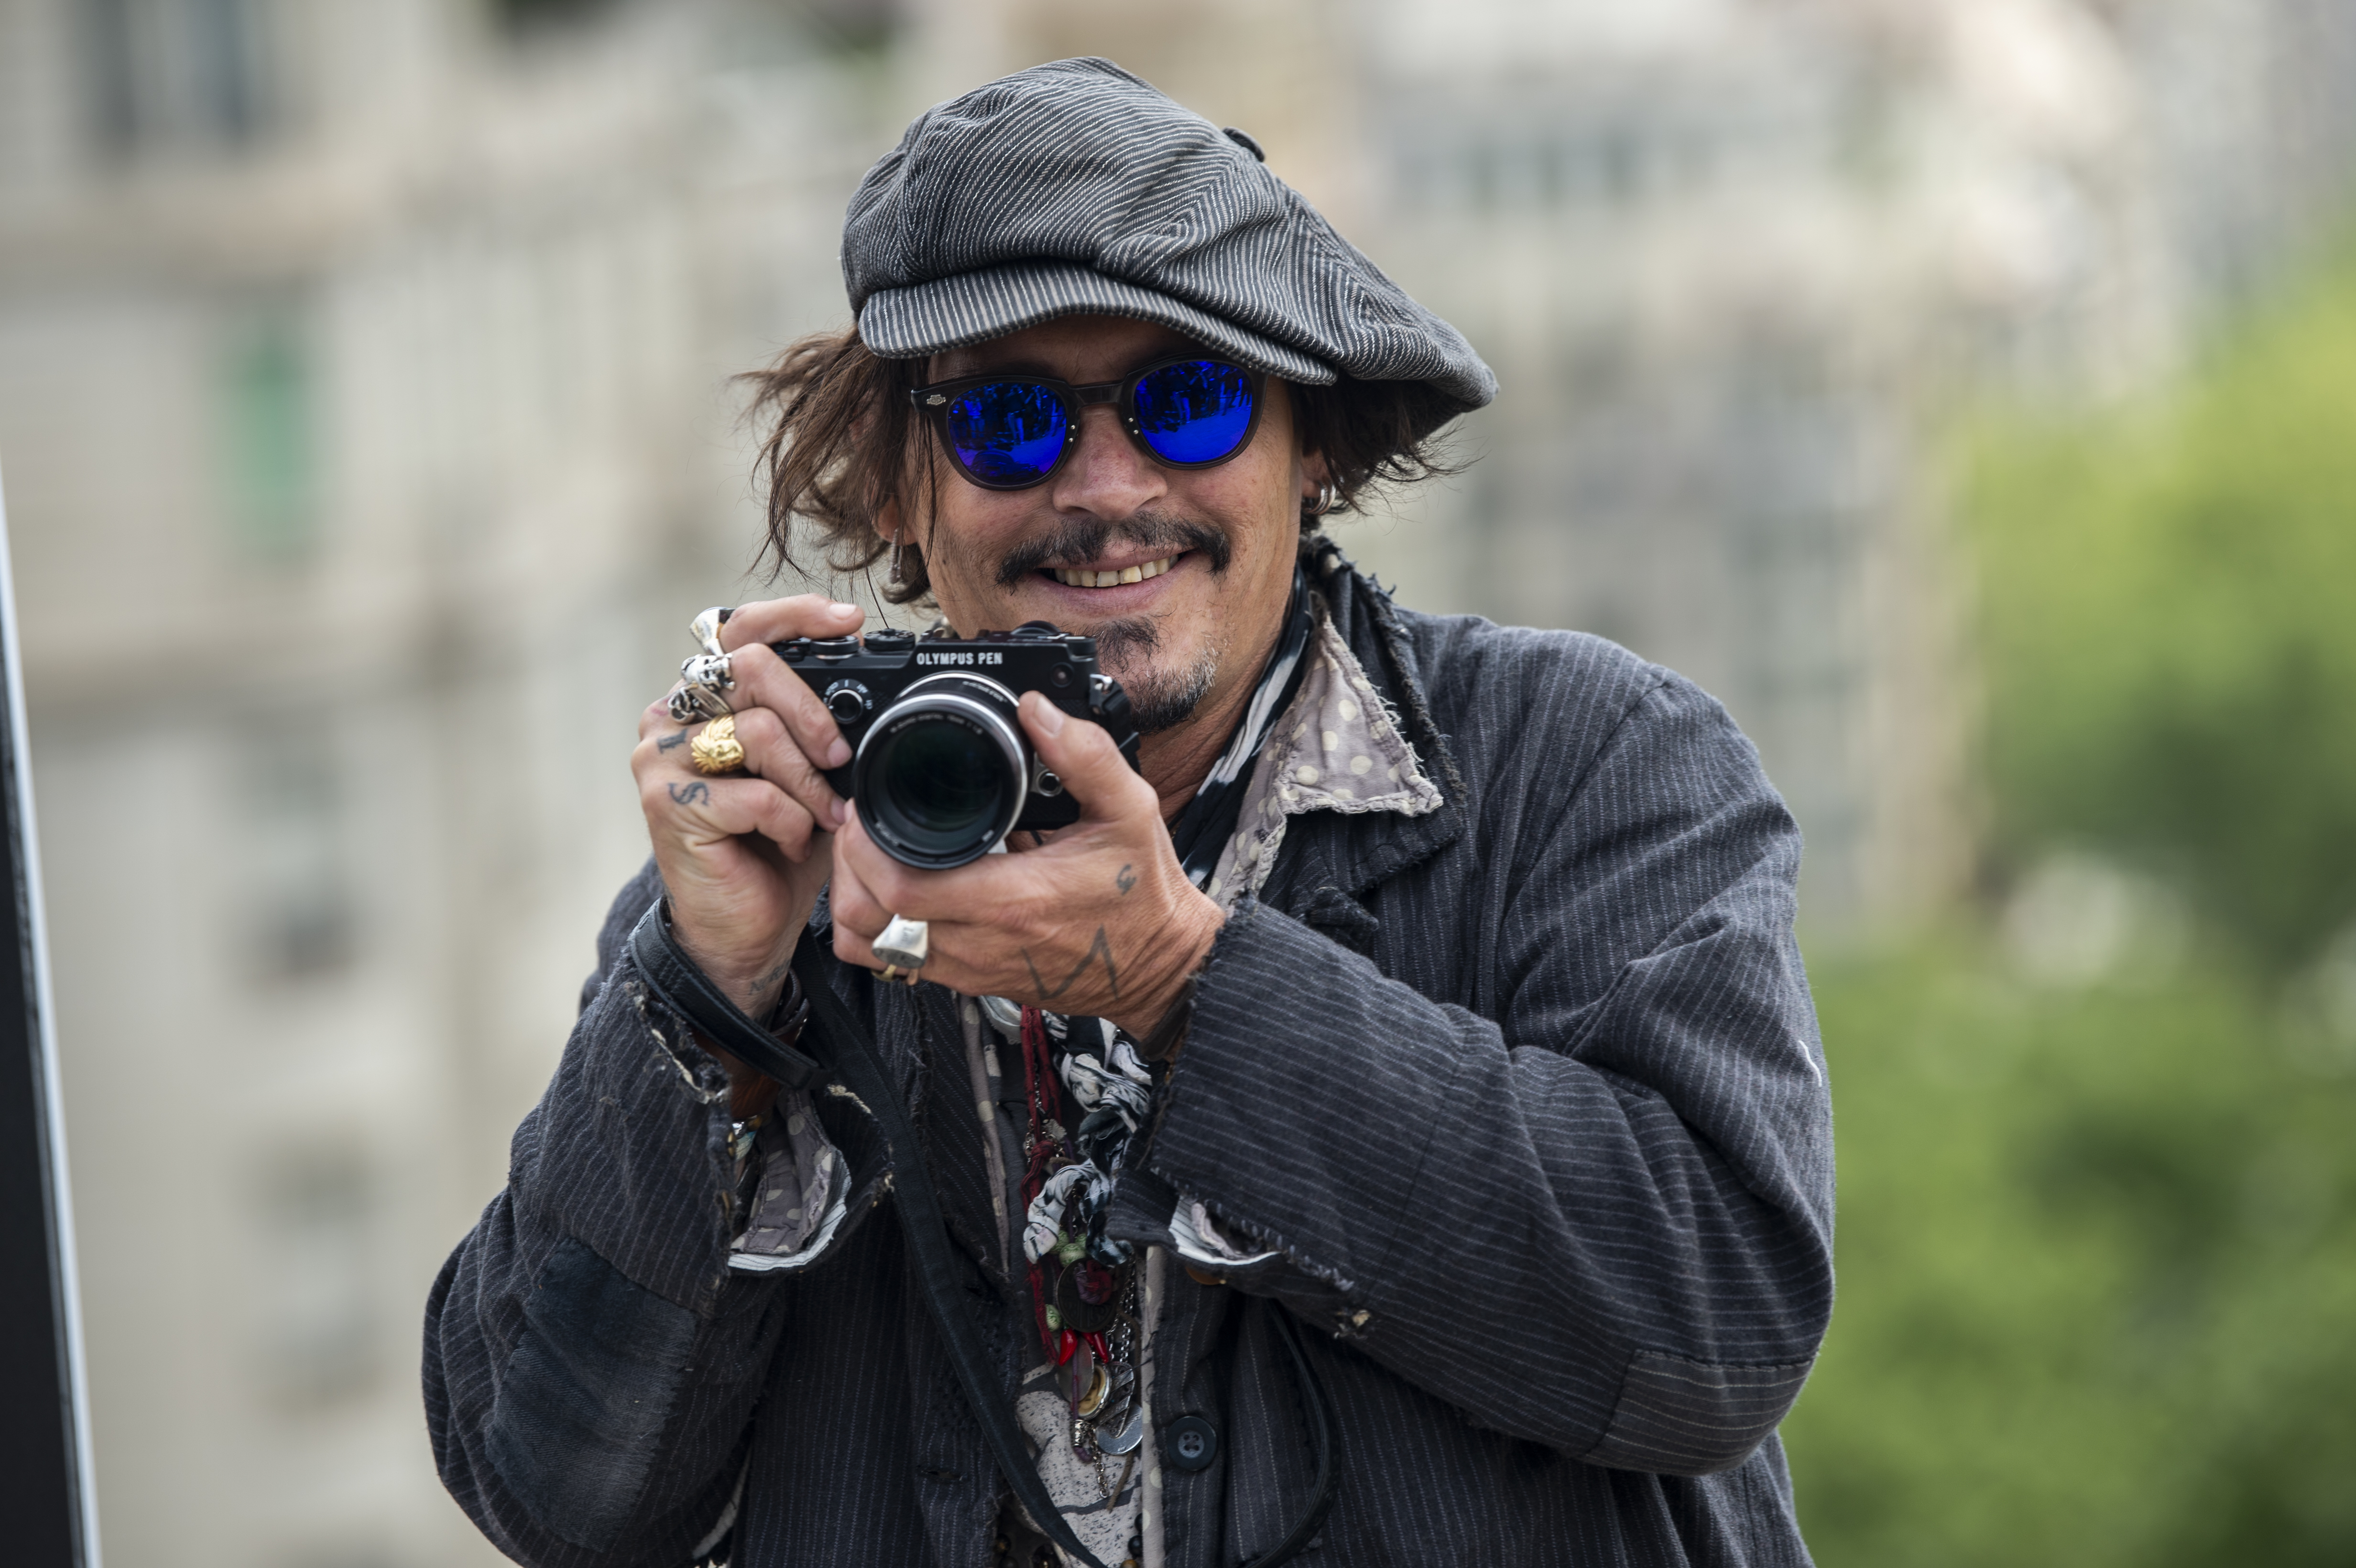 Johnny Depp participe à un photocall pour présenter son dernier film "Minamata" pendant le BCN Film Festival à l'hôtel Casa Fuster le 16 avril 2021 à Barcelone, Espagne | Source : Getty Images